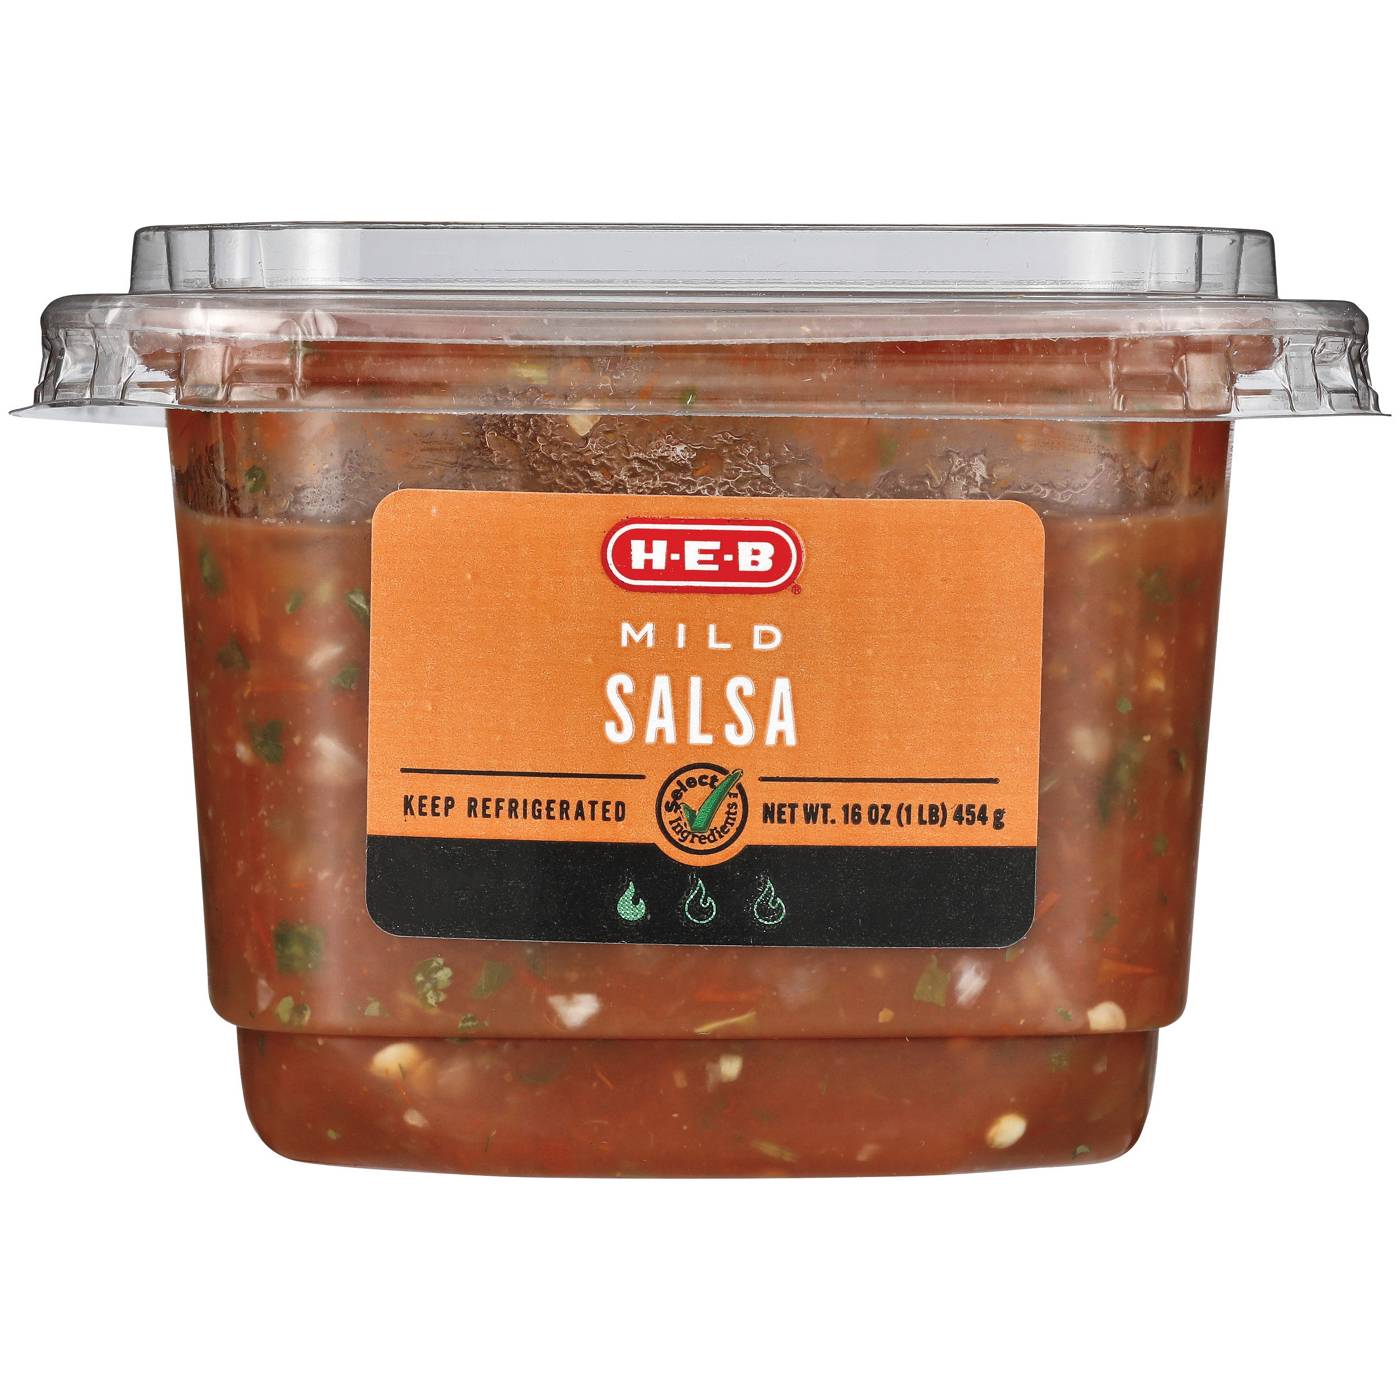 H-E-B Fresh Salsa - Mild; image 1 of 2